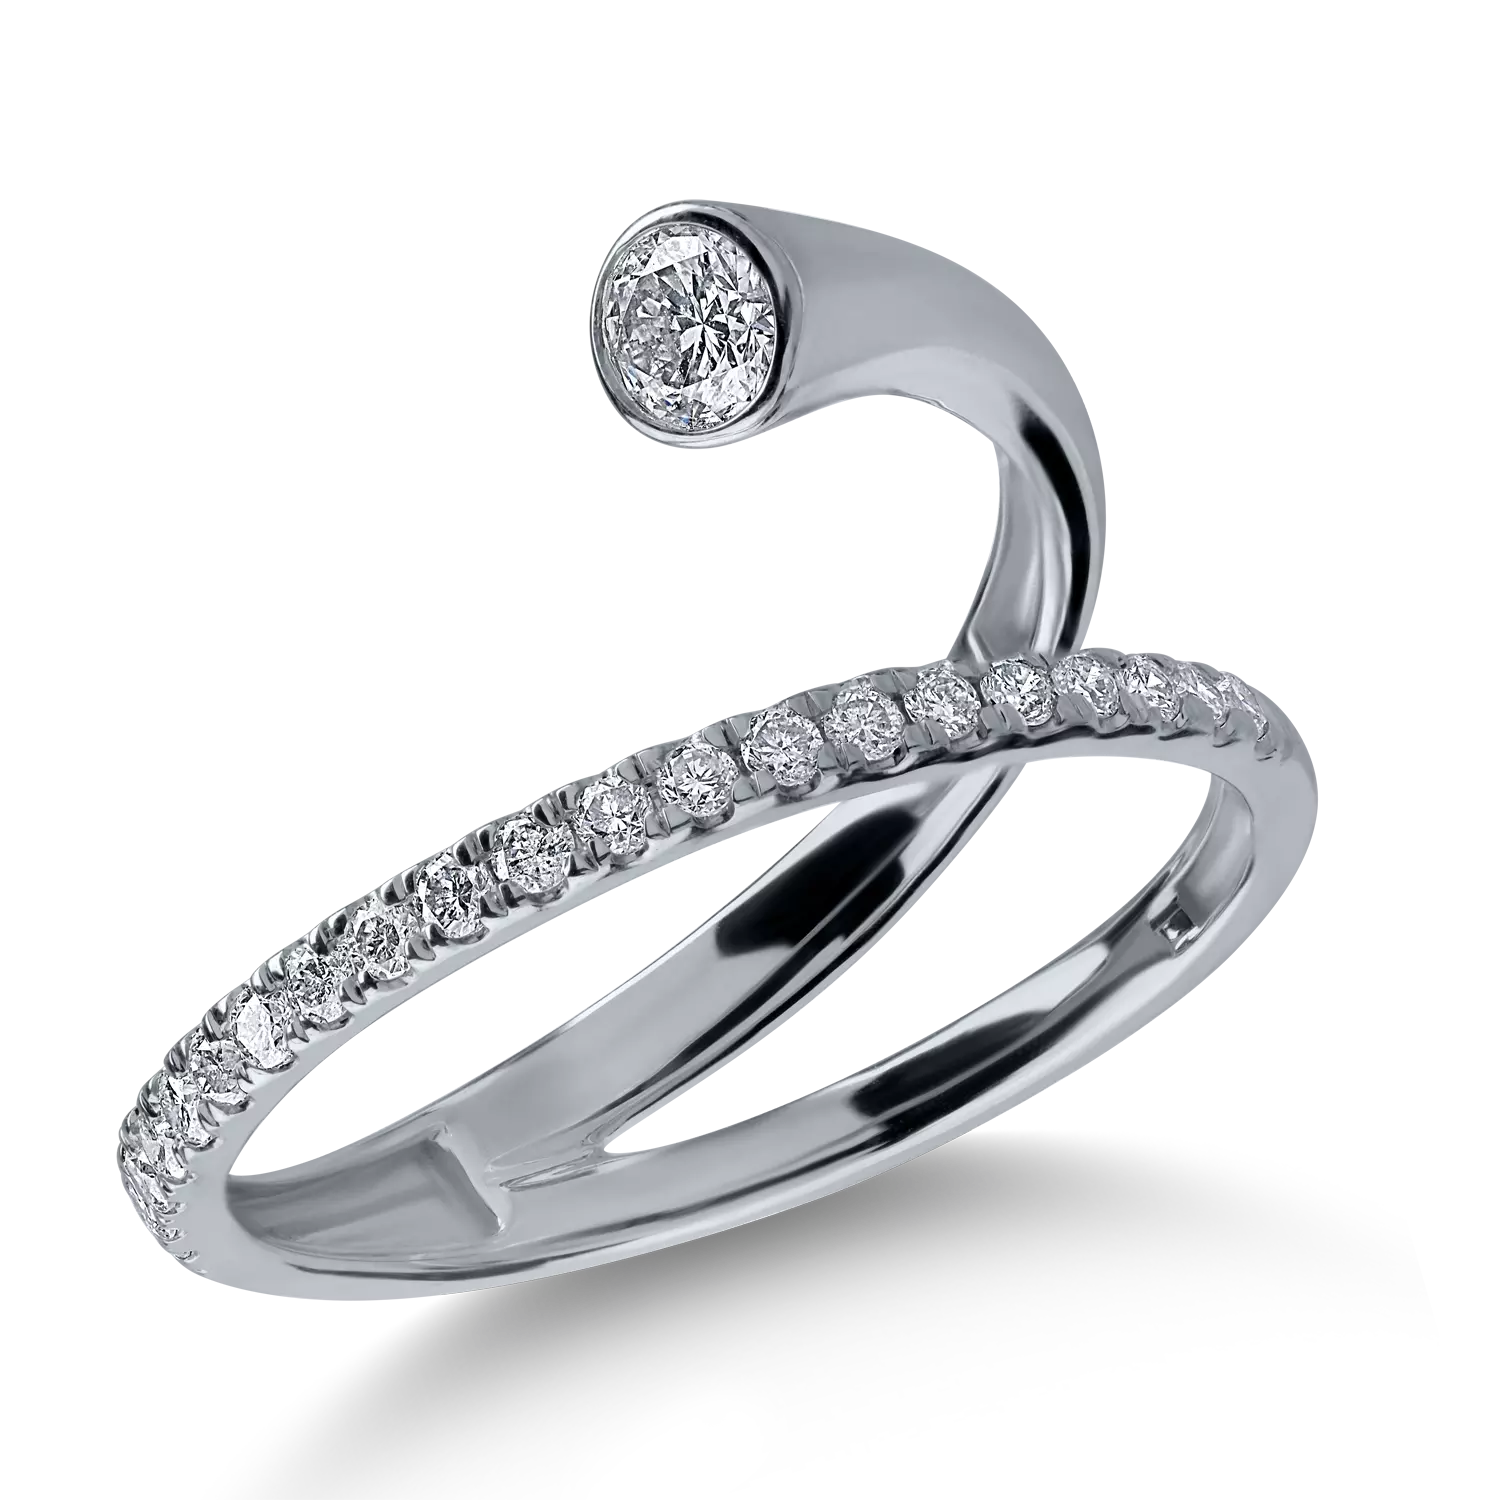 Inel din aur alb cu diamante de 0.33ct